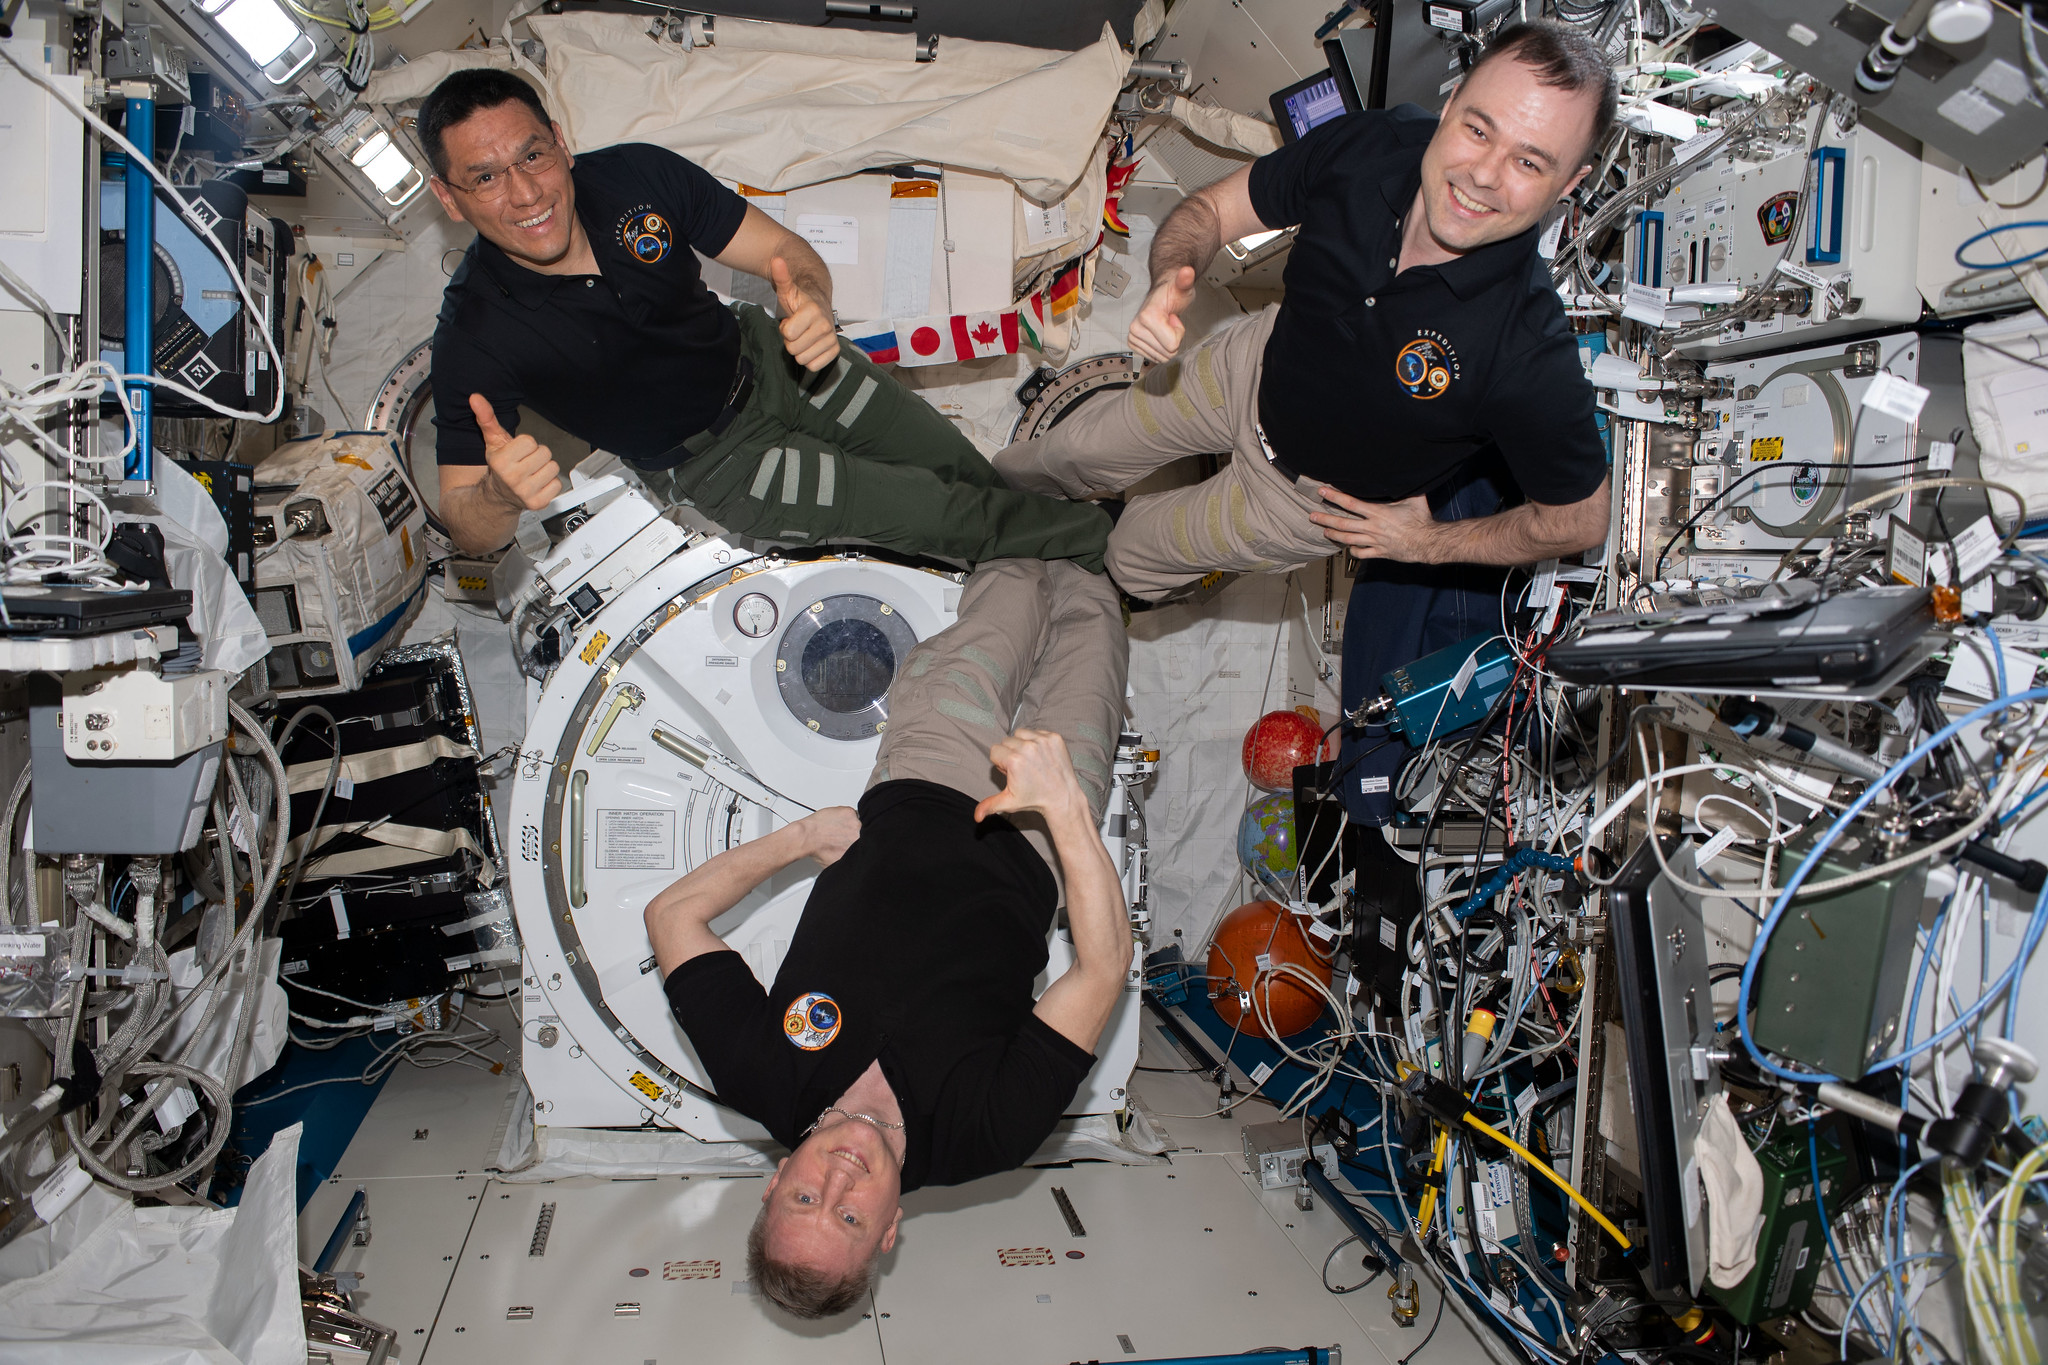 356 jours ! Ces trois astronautes dépassent aujourd'hui le record du vol le plus long sur l'ISS